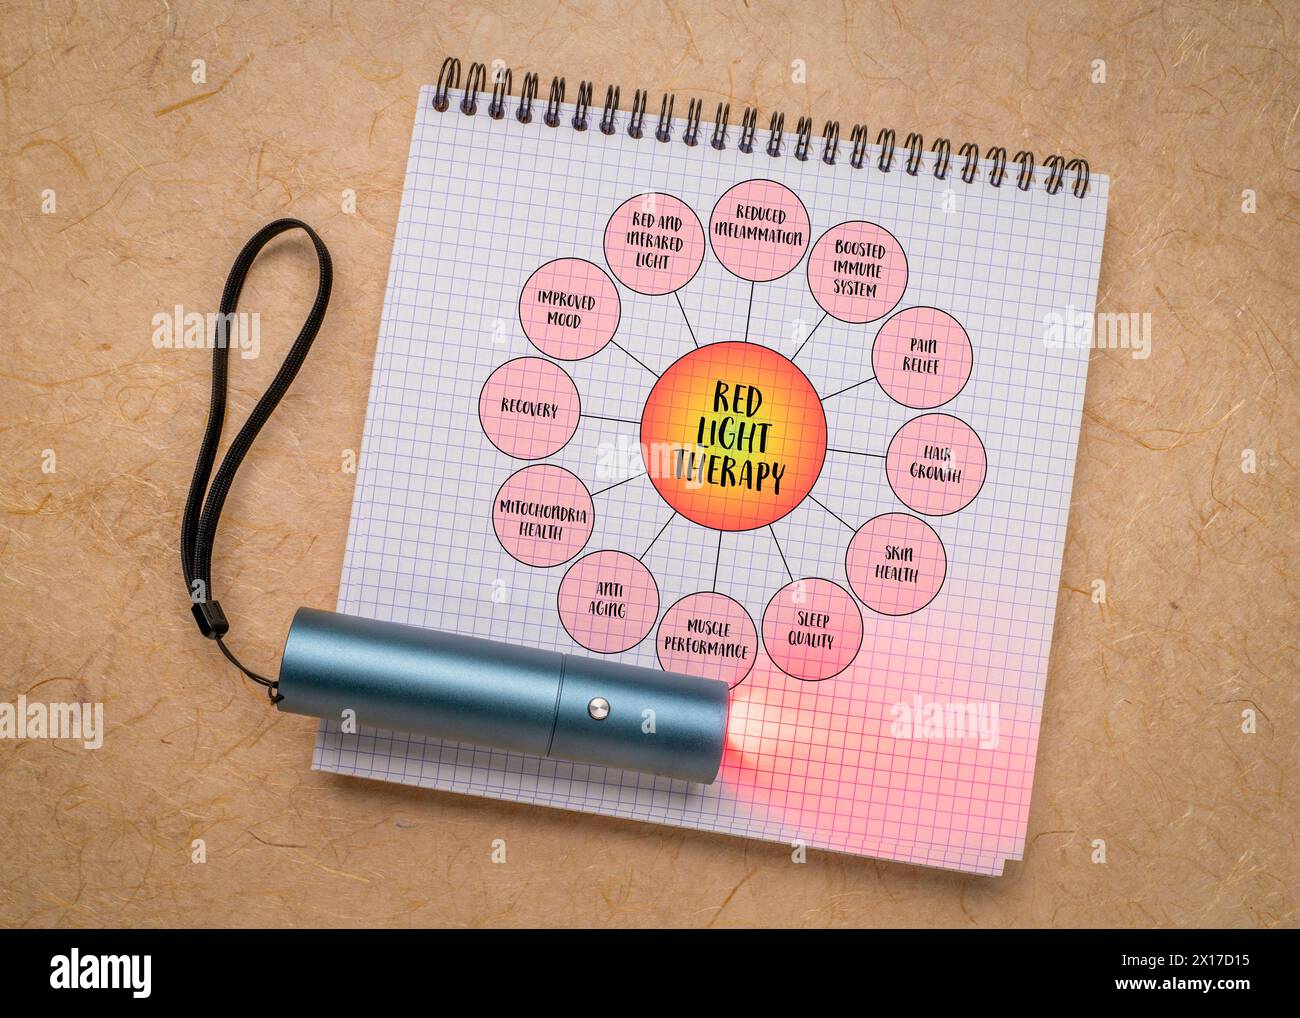 Vorteile der Rotlichttherapie - Mindmap Infografik-Diagramm in einem Spiralnotizbuch mit kleiner Taschenlampe für lokale Behandlungen, Gesundheit, Lifestyle, Selbstfahrer Stockfoto